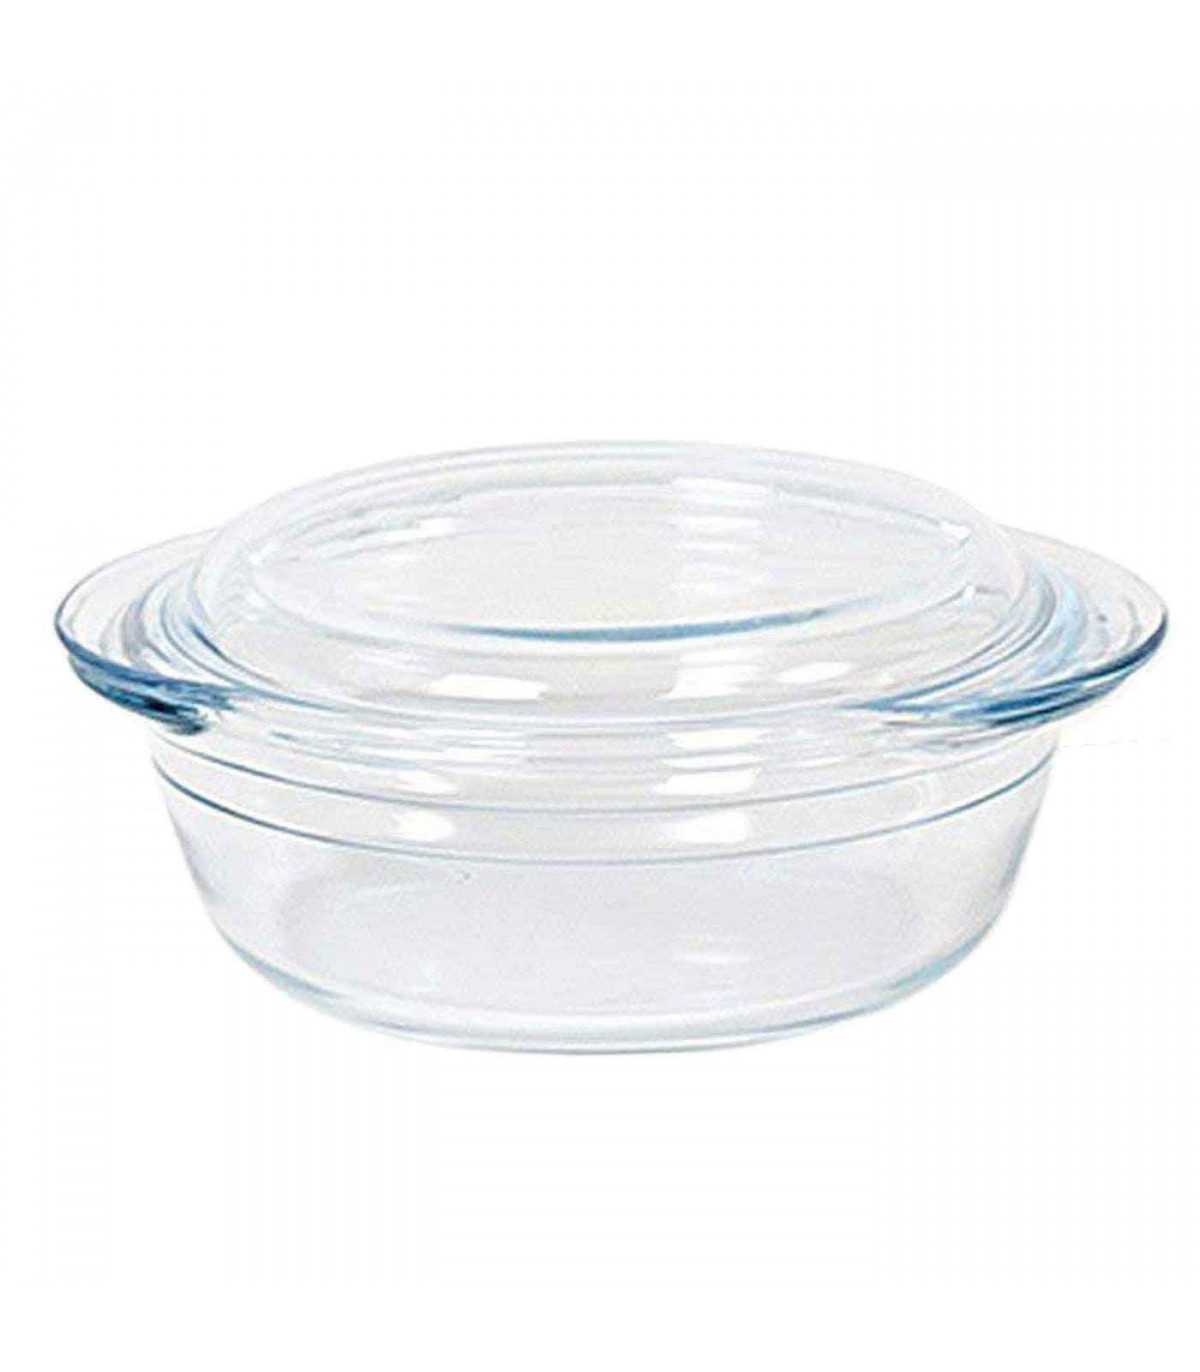 Cacerola de vidrio de 1.5L/50 onzas con tapa, cacerolas de vidrio, cazuela  de vidrio resistente al calor, cacerola cubierta con tapa, ollas de cocina